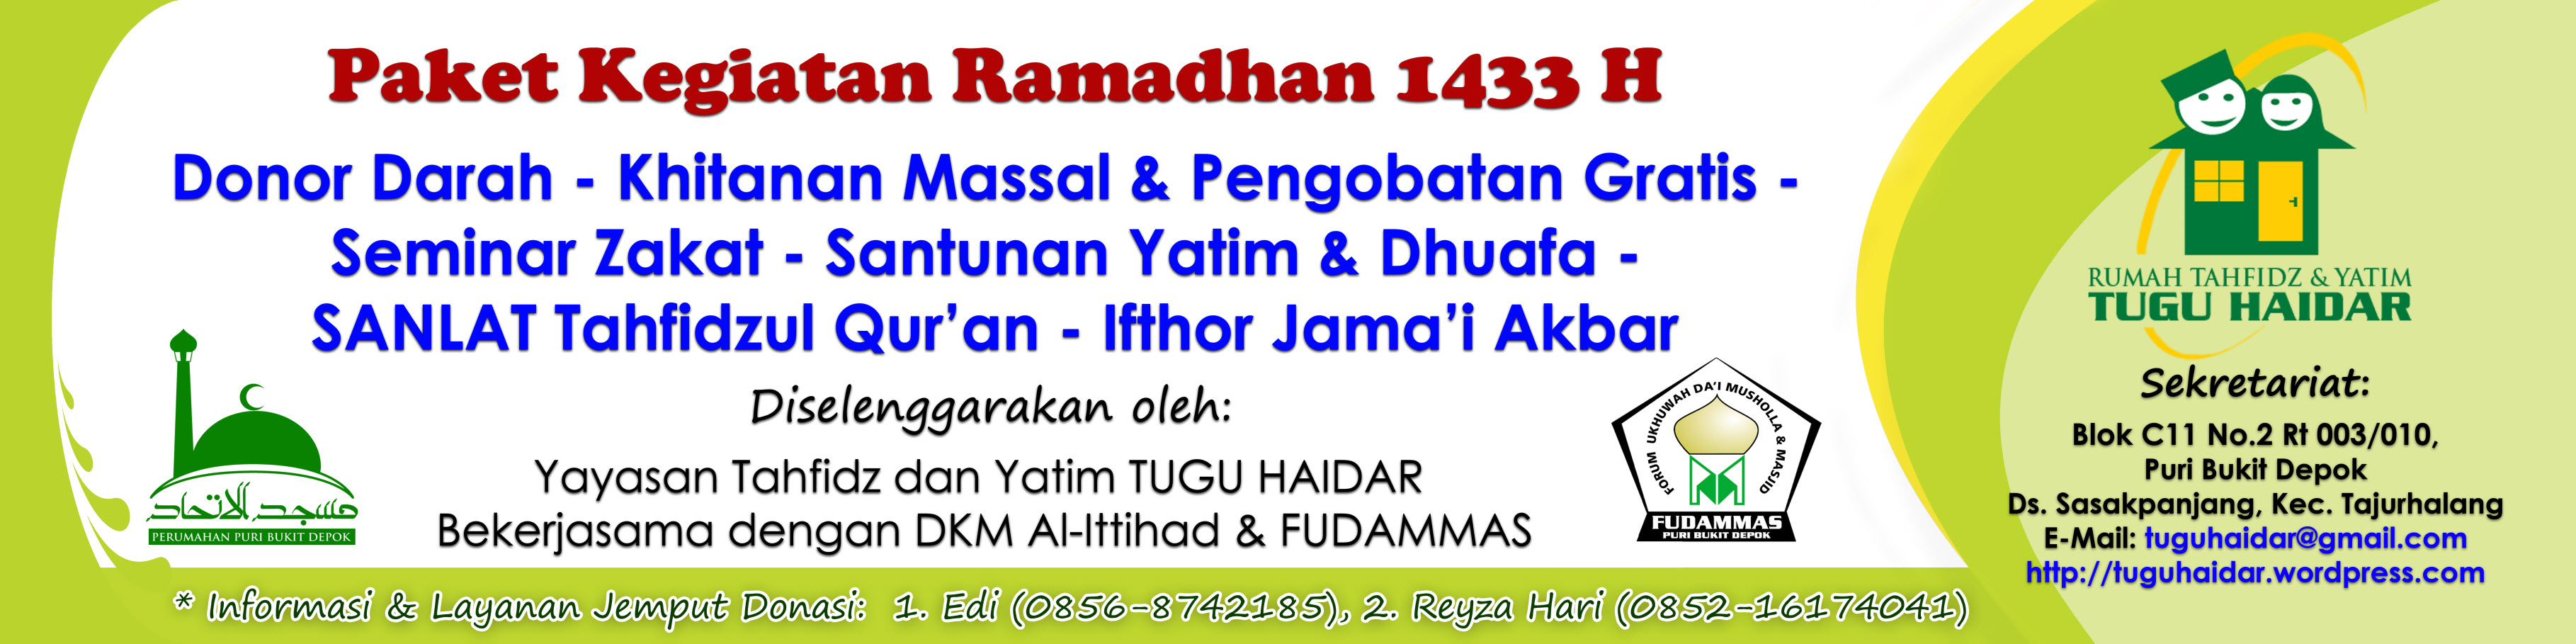 Paket Kegiatan Ramadhan 1433 H  Rumah Tahfidz & Yatim 